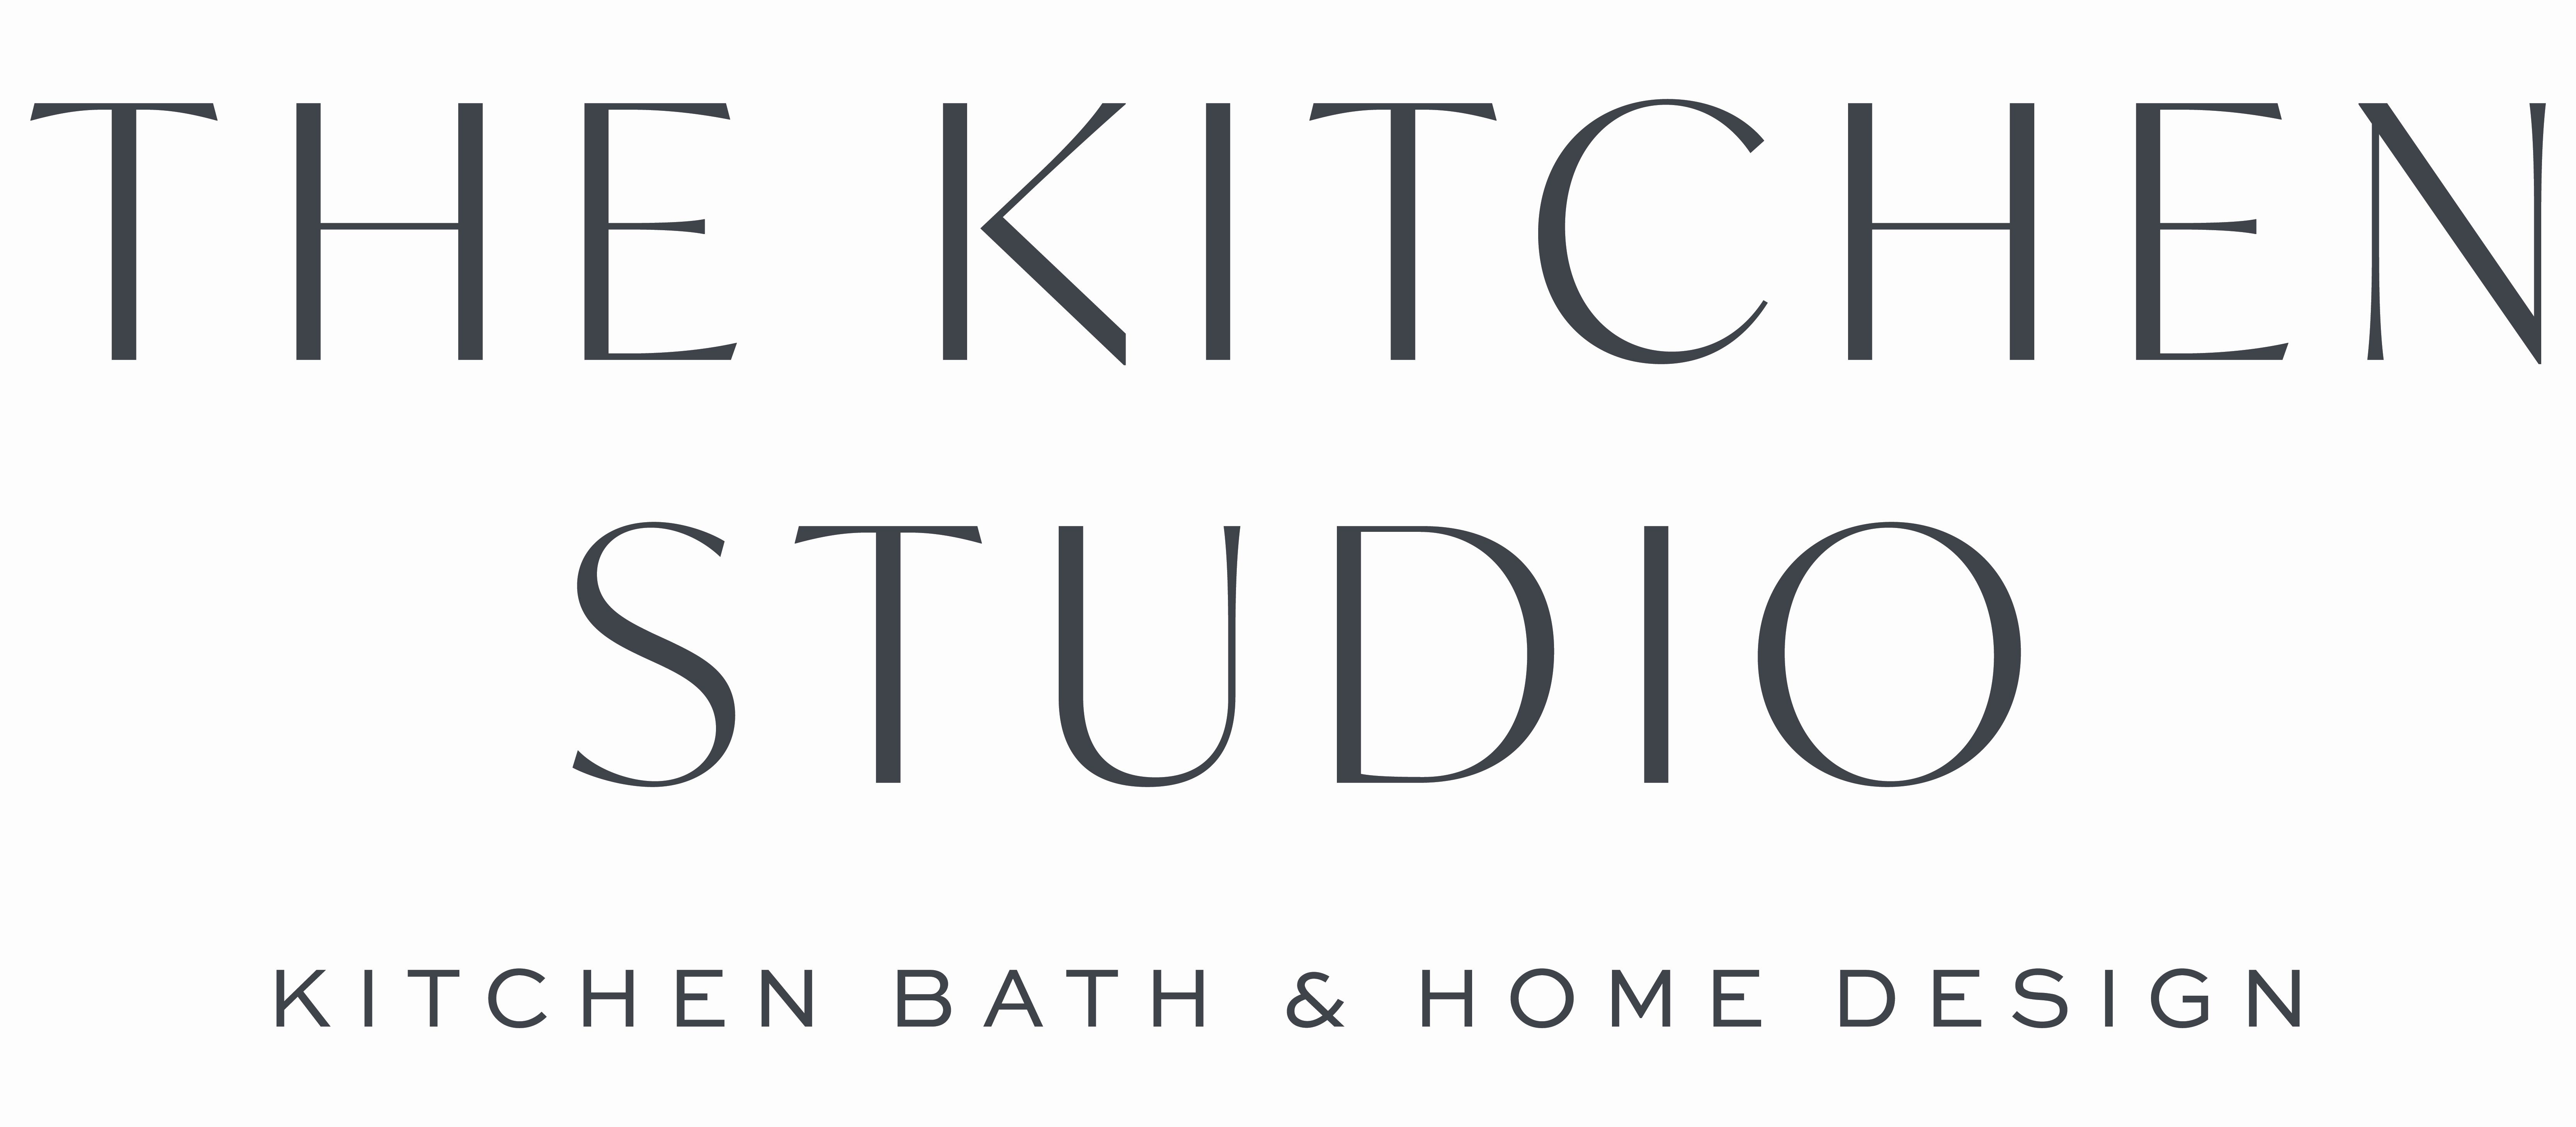 The Kitchen Studio